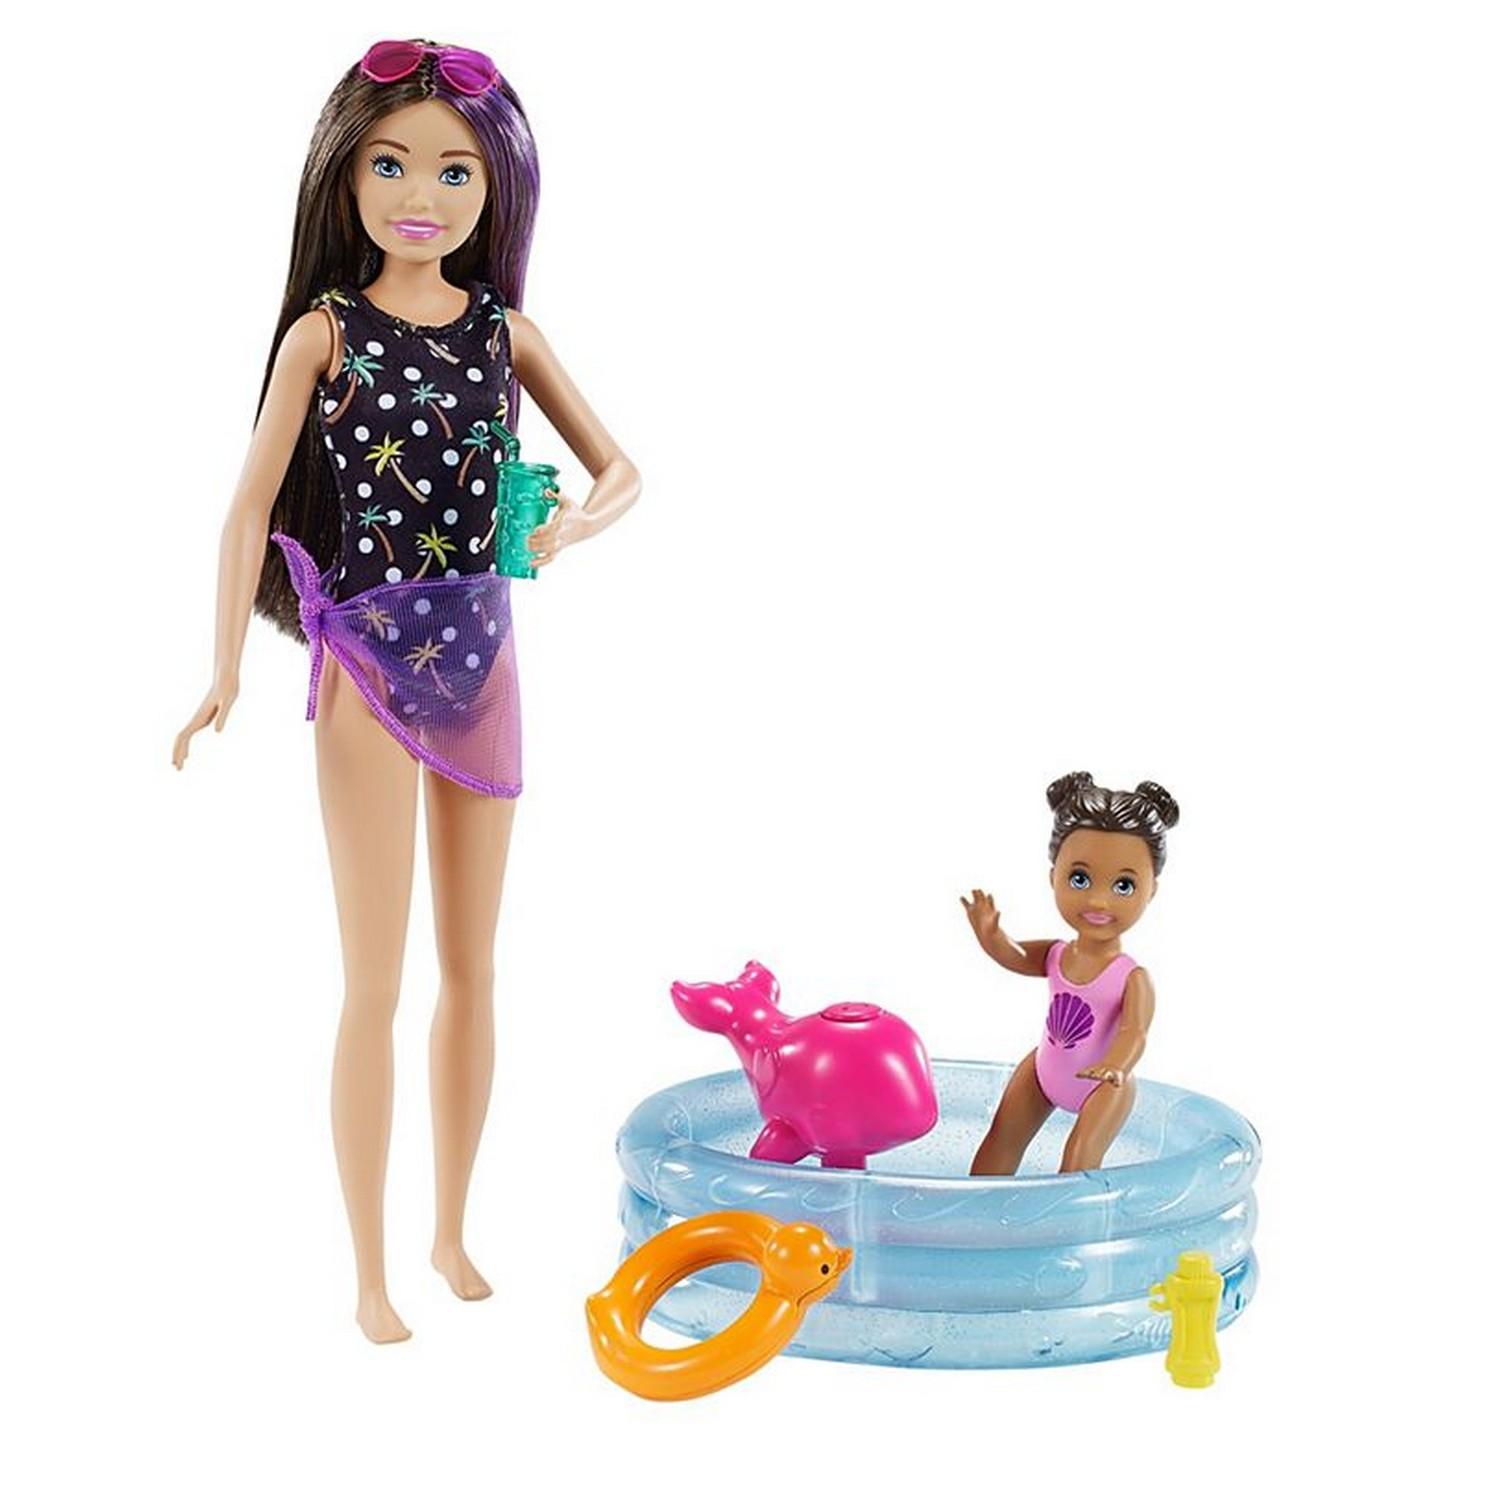 Barbie-coffret skipper baby-sitter poussette avec poupee, poupees